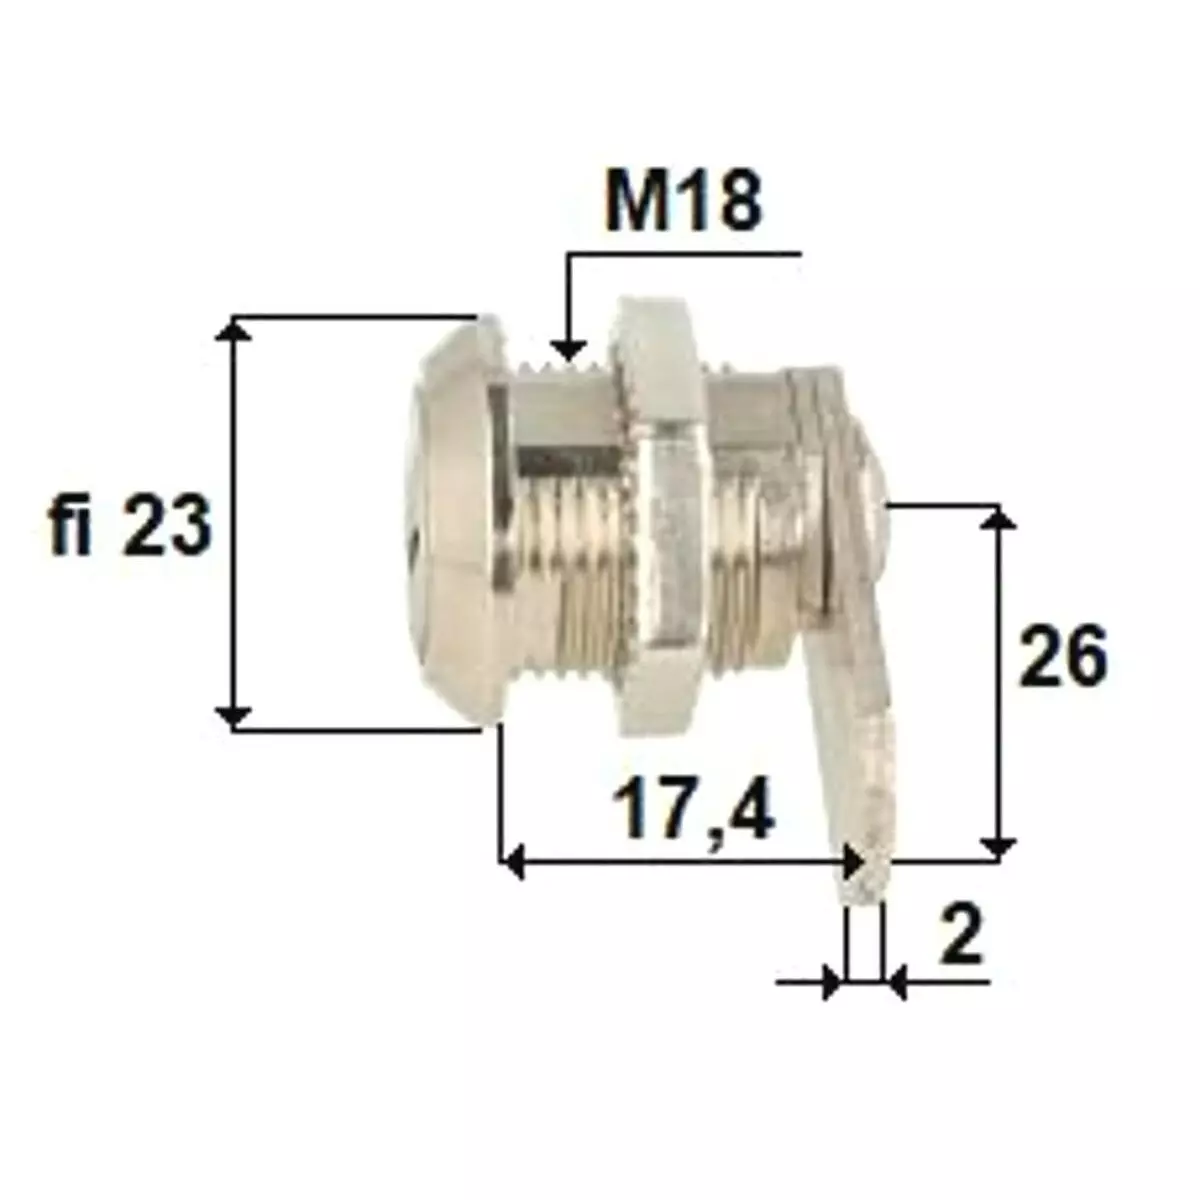 Zamek krzywkowy ø18 L-16mm Inf. ujednolicona kombinacja klucza